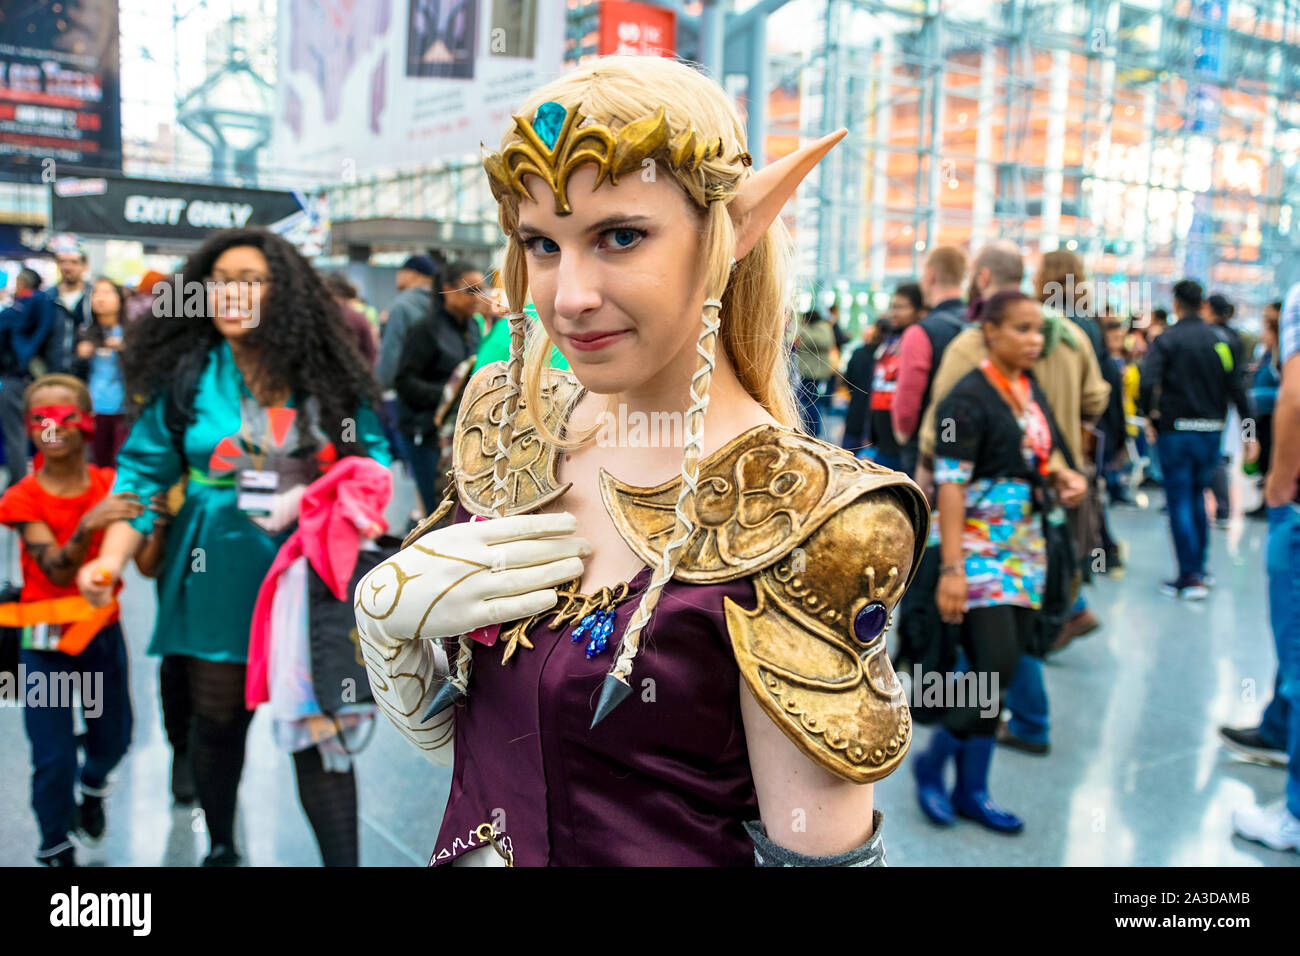 Centro de Convenciones Jacob K. Javits, New York New York - Octubre 9, 2016: Una hermosa cosplayer vestida como Princesa Zelda. Foto de stock